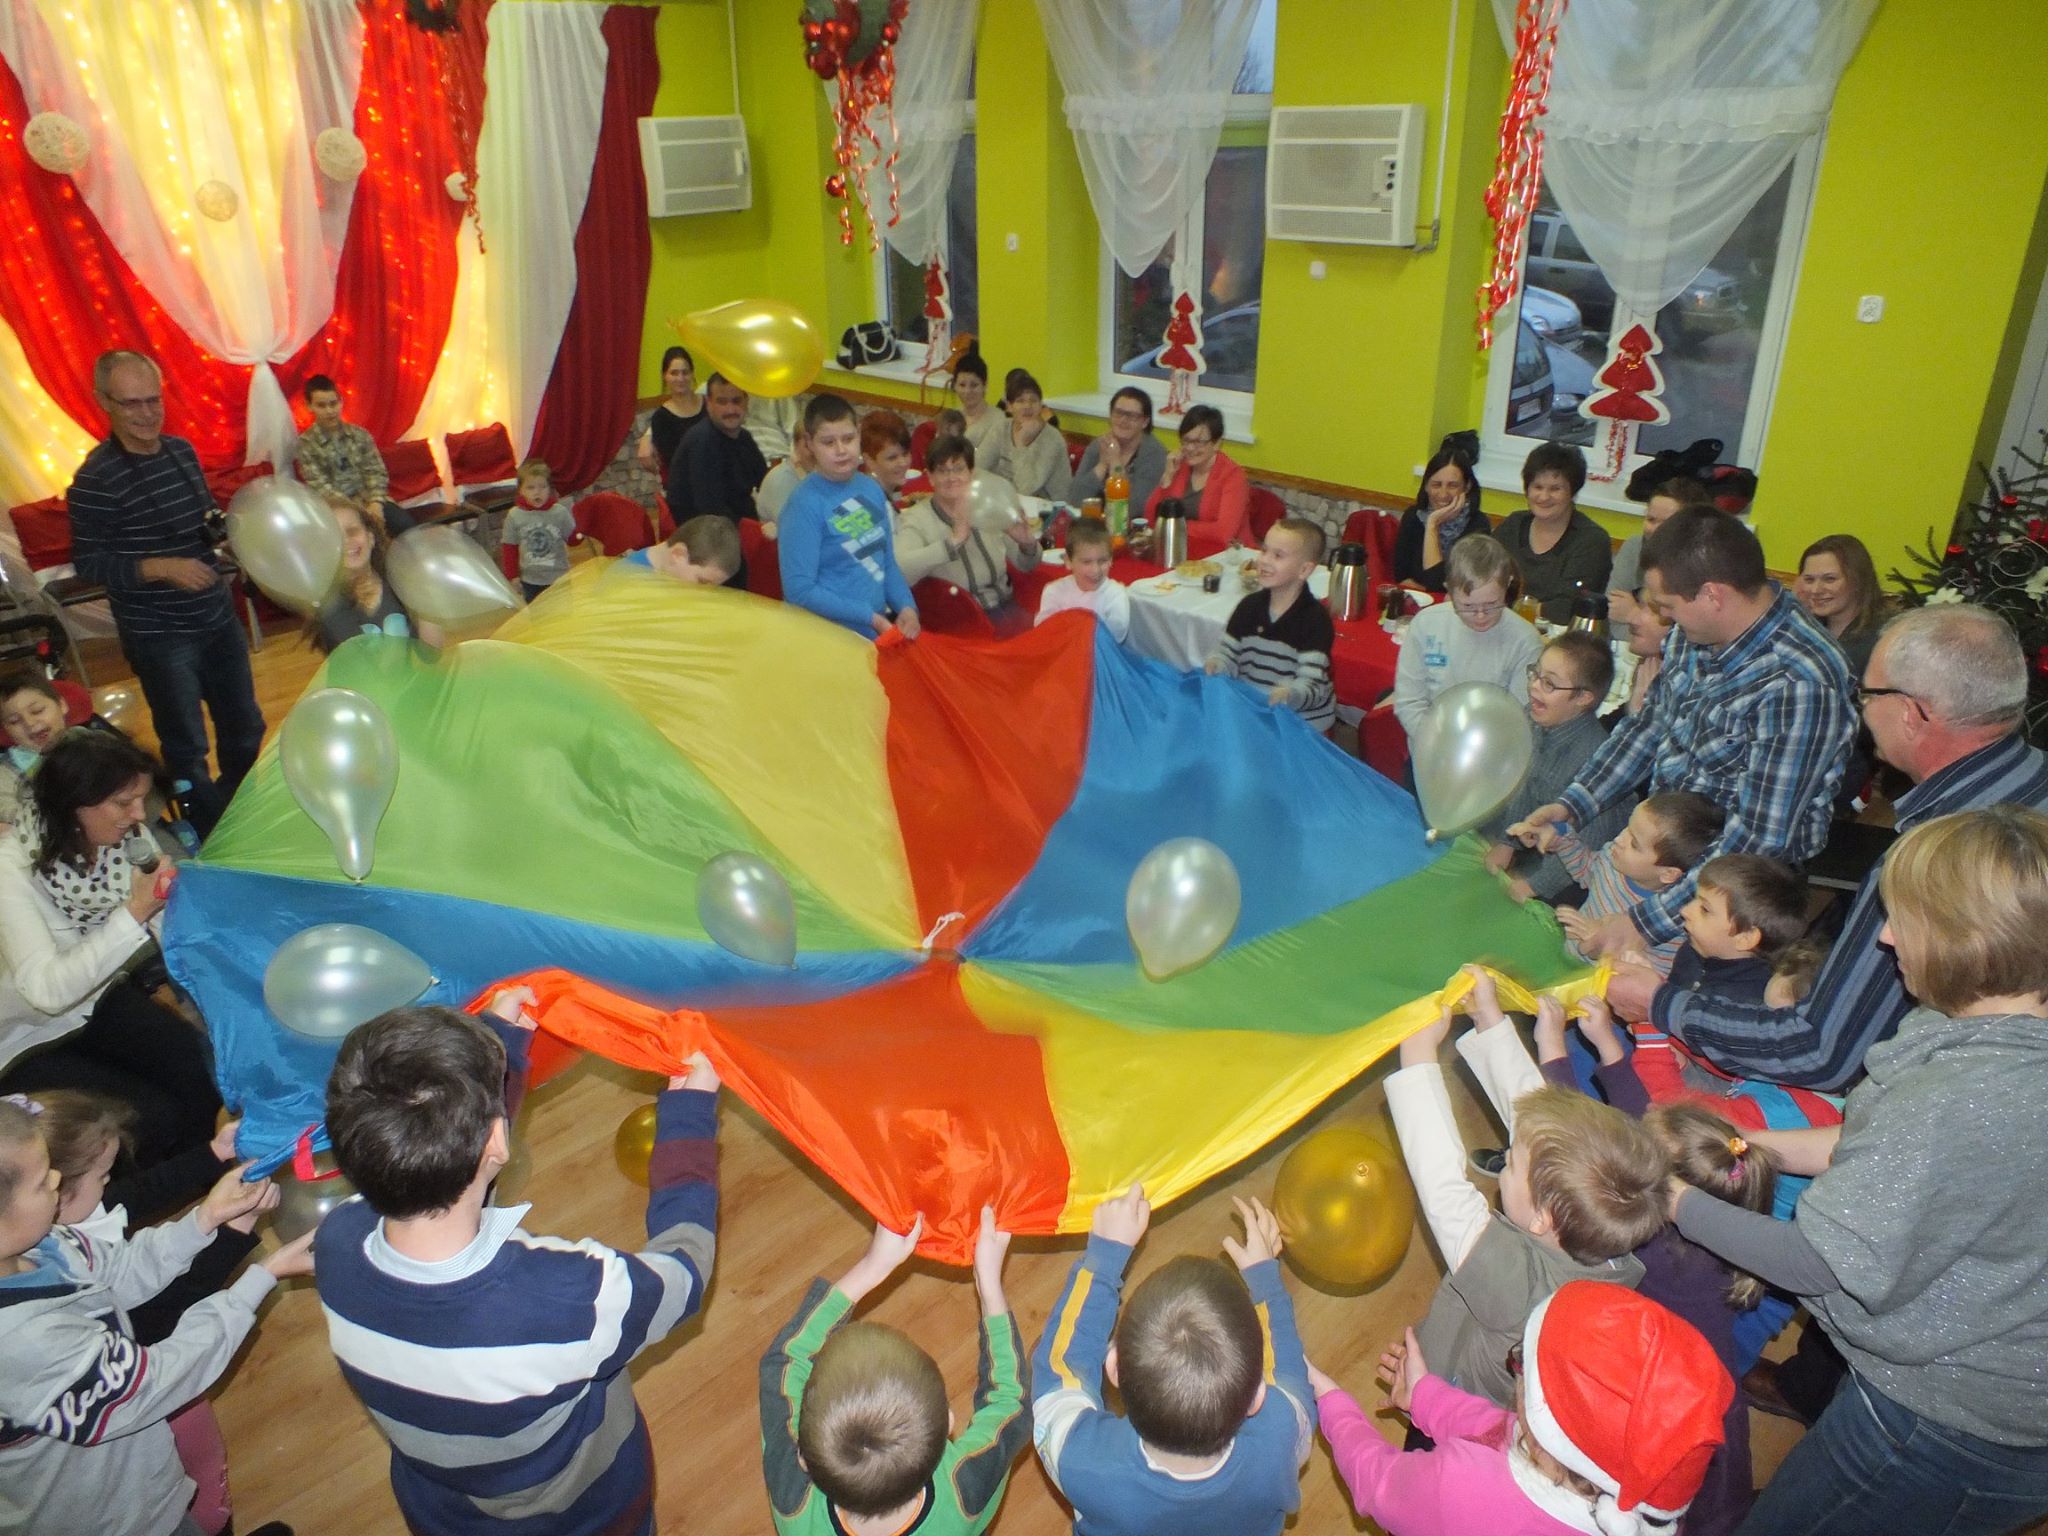 Grupa dzieci stojąca w okręgu trzyma kolorowy materiał i podbija nim balony. W tle siedzi grupa dorosłych przy stole i obserwuje dzieci.